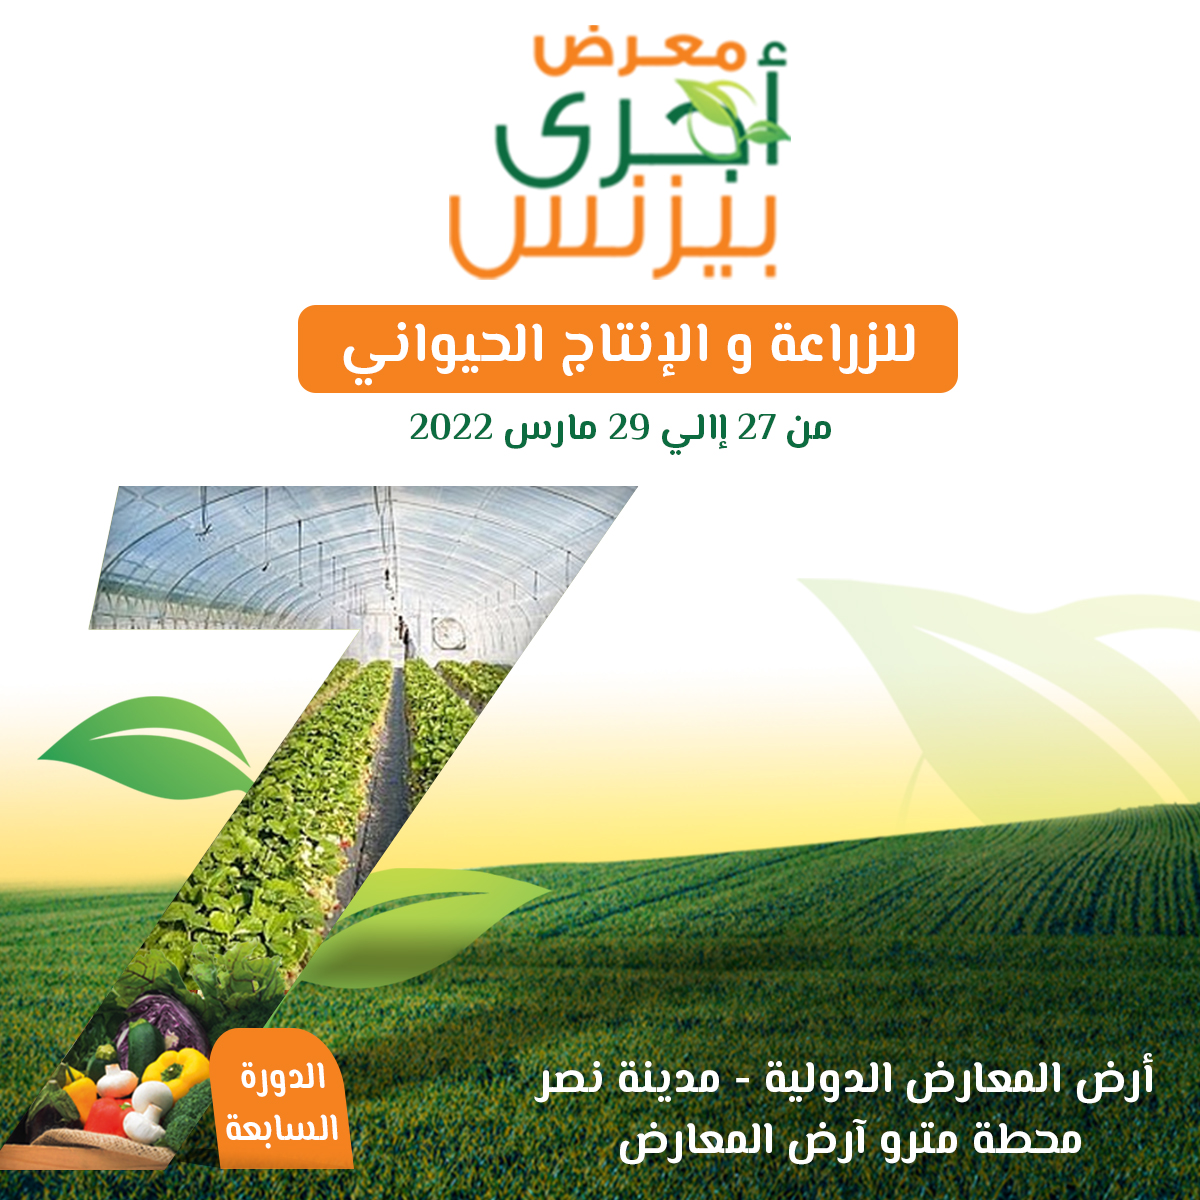 معرض وسط الصعيد : اكبر فعالية زراعية تشهدها محافظة أسيوط خلال مارس القادم